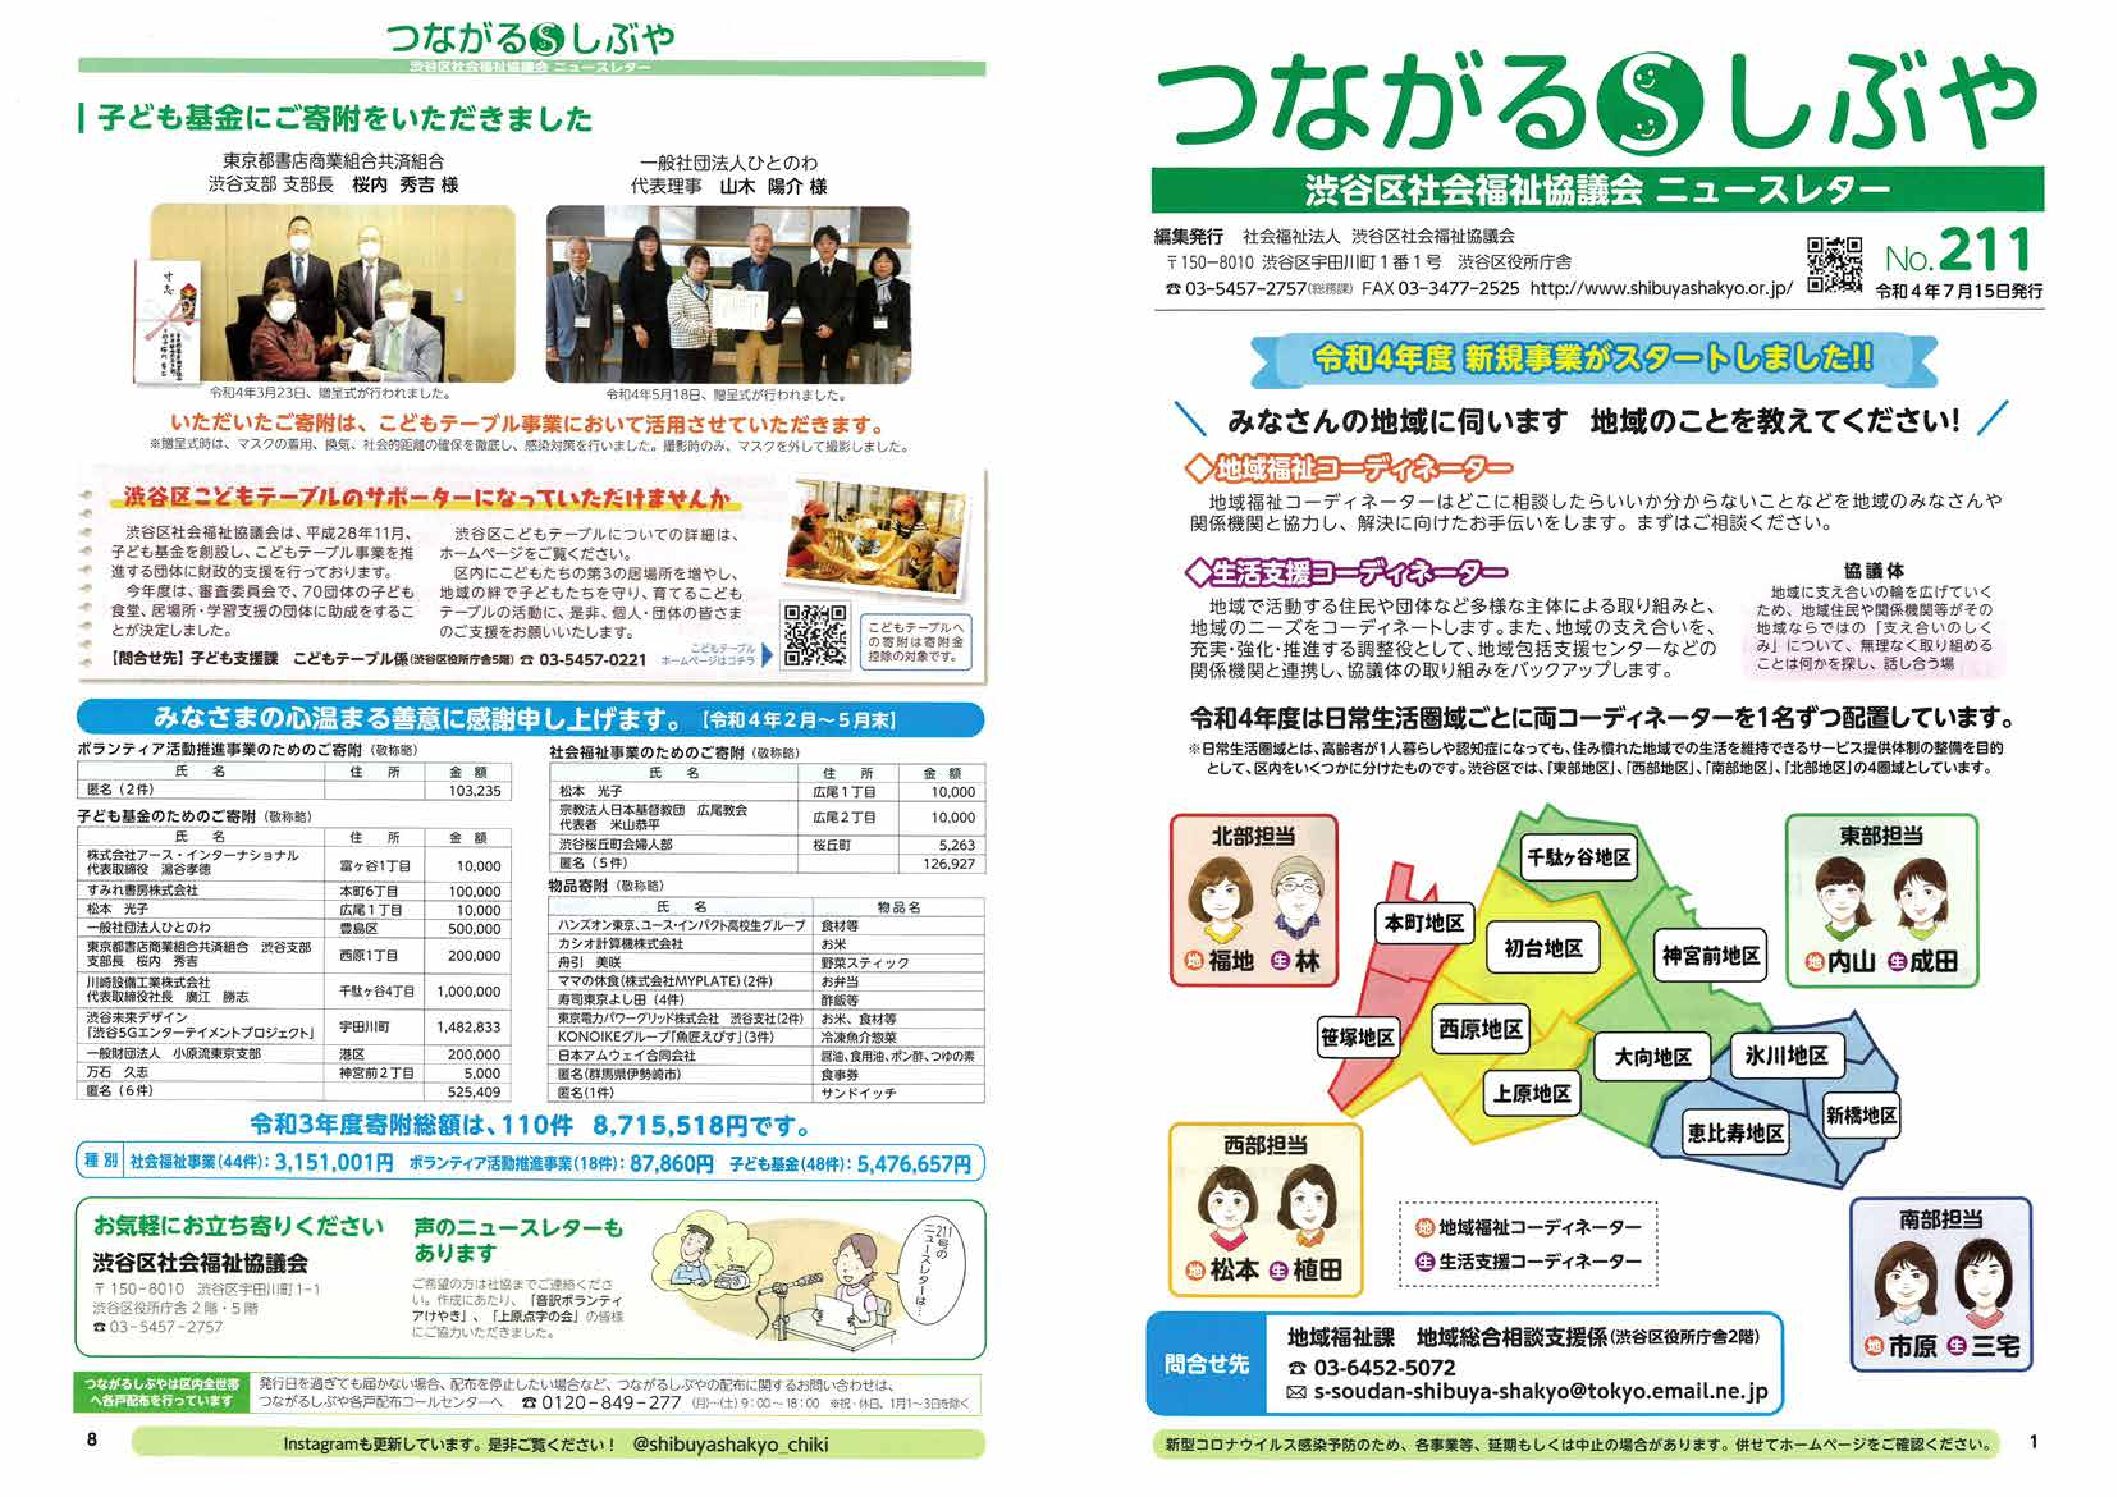 【お知らせ】渋谷区社会福祉協議会ニュースレター『つながるしぶや』に掲載されました。